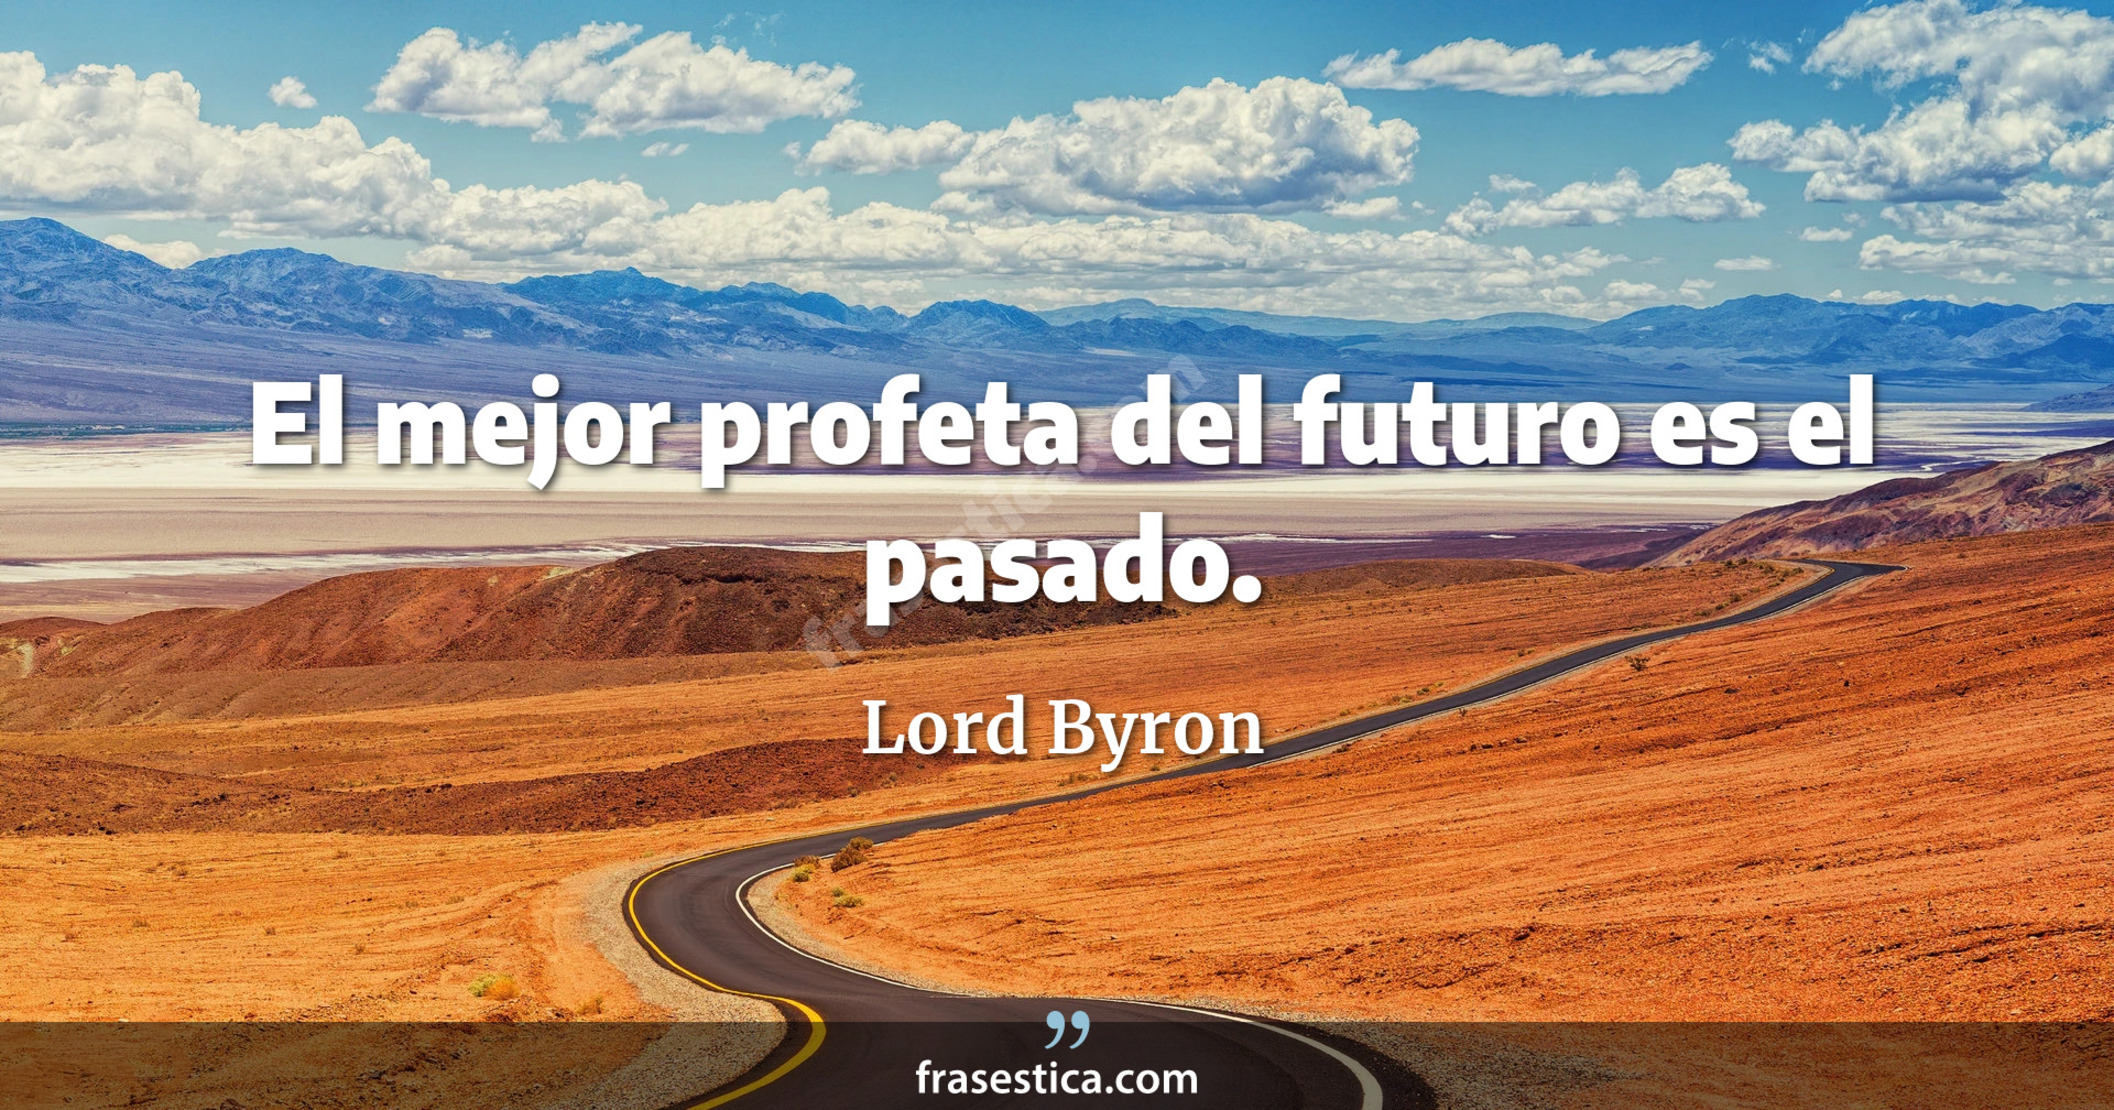 El mejor profeta del futuro es el pasado. - Lord Byron